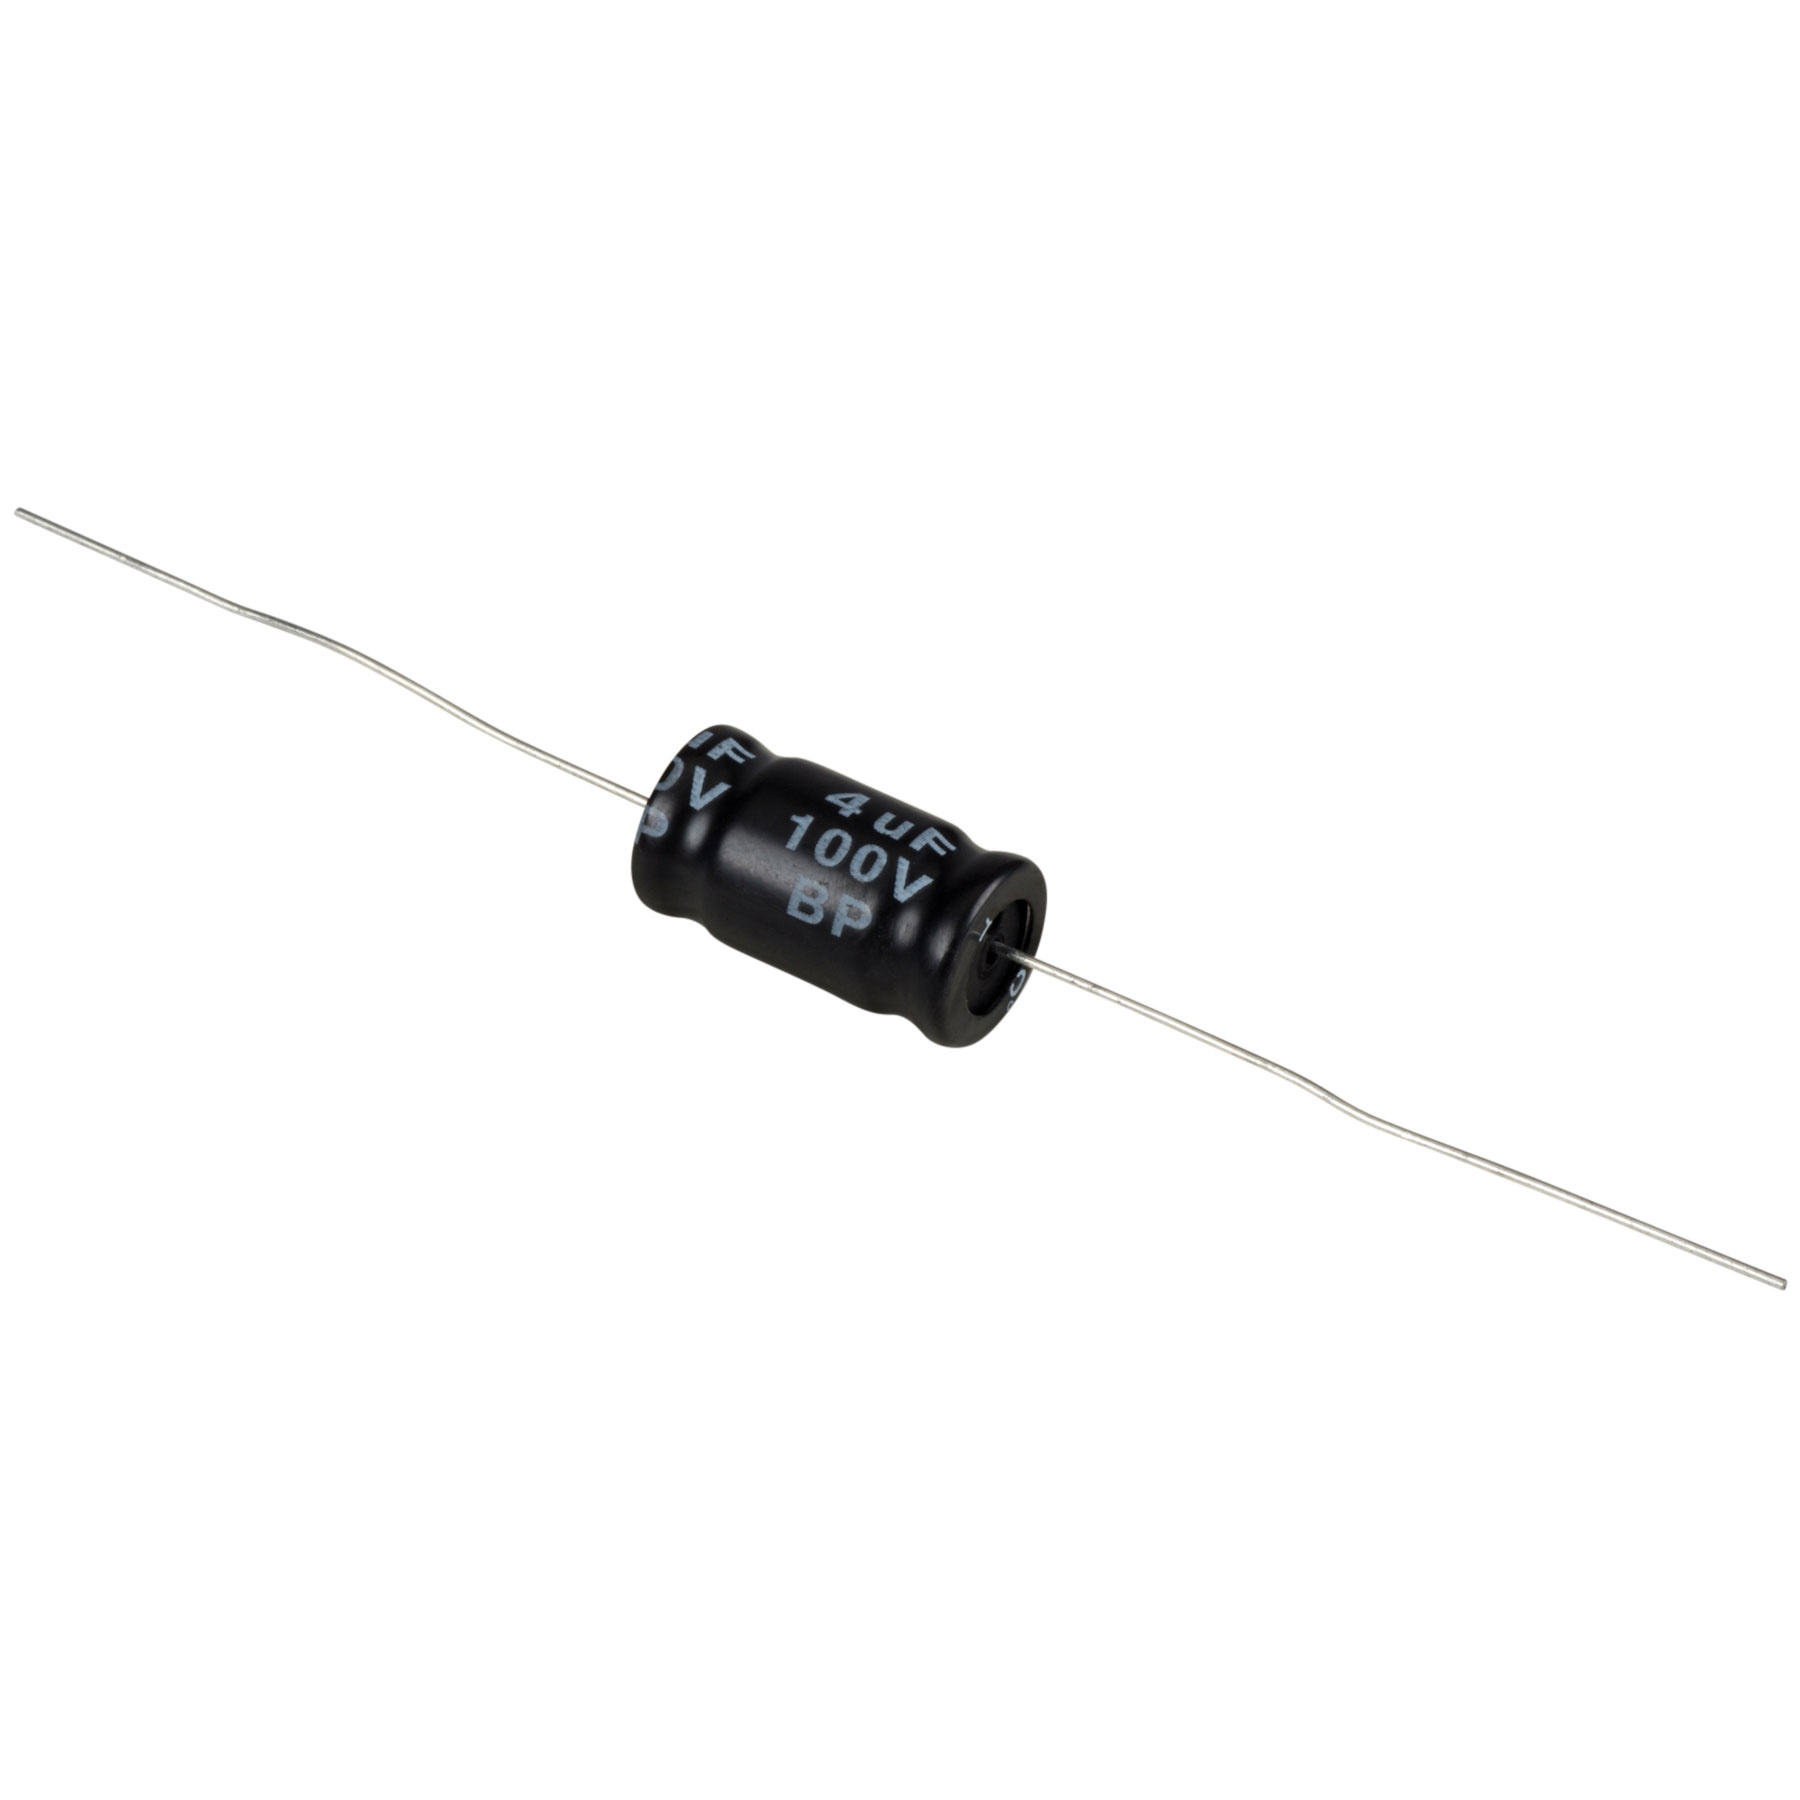 Condensatoare - Condensator electrolitic bipolar 4 µF | 10% | 100 V, audioclub.ro